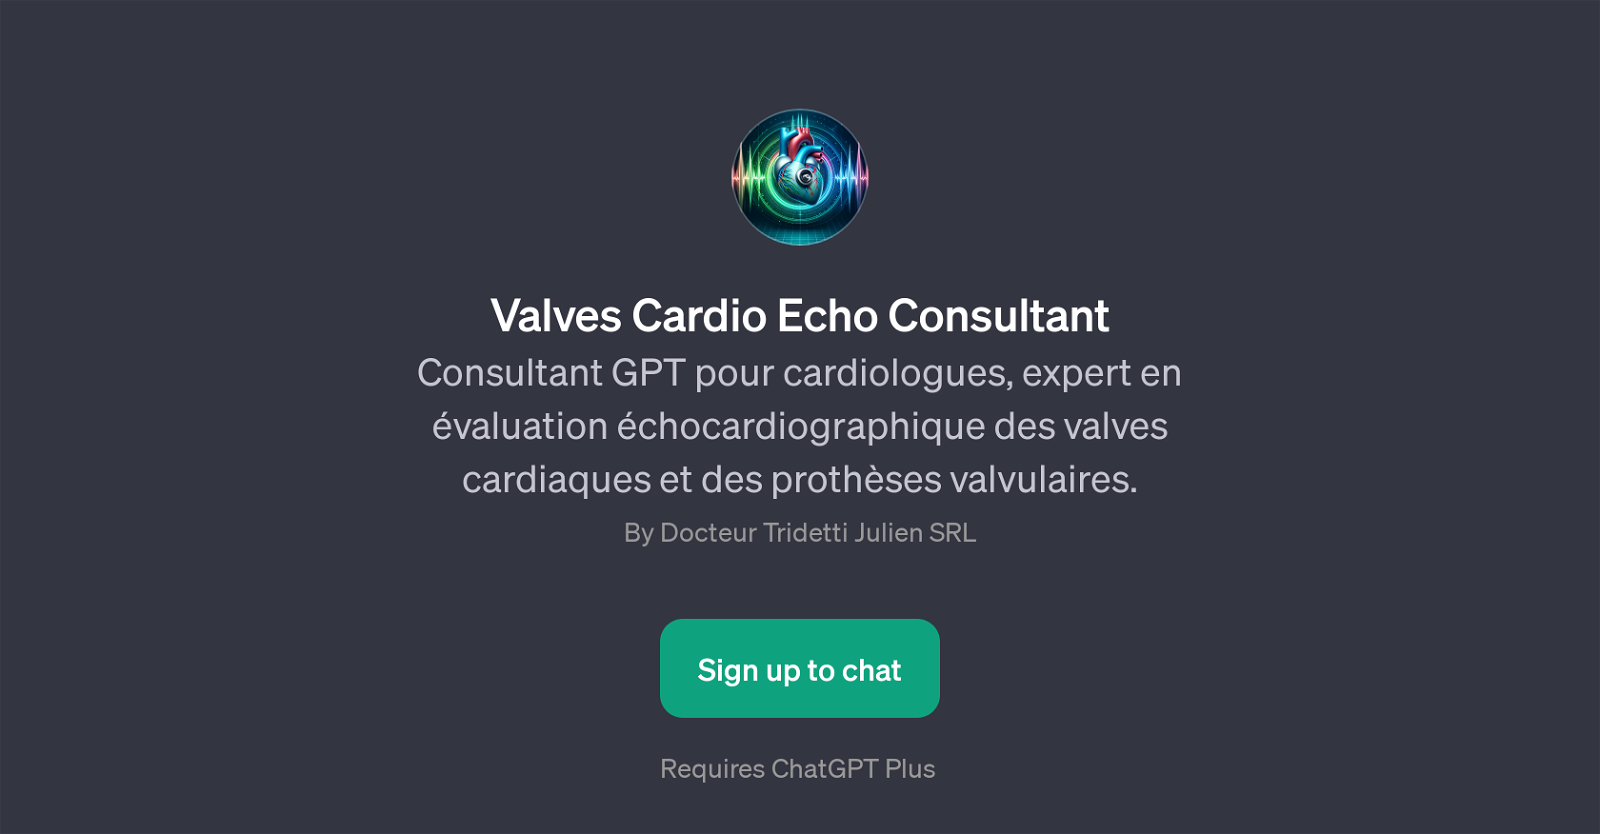 Valves Cardio Echo Consultant website